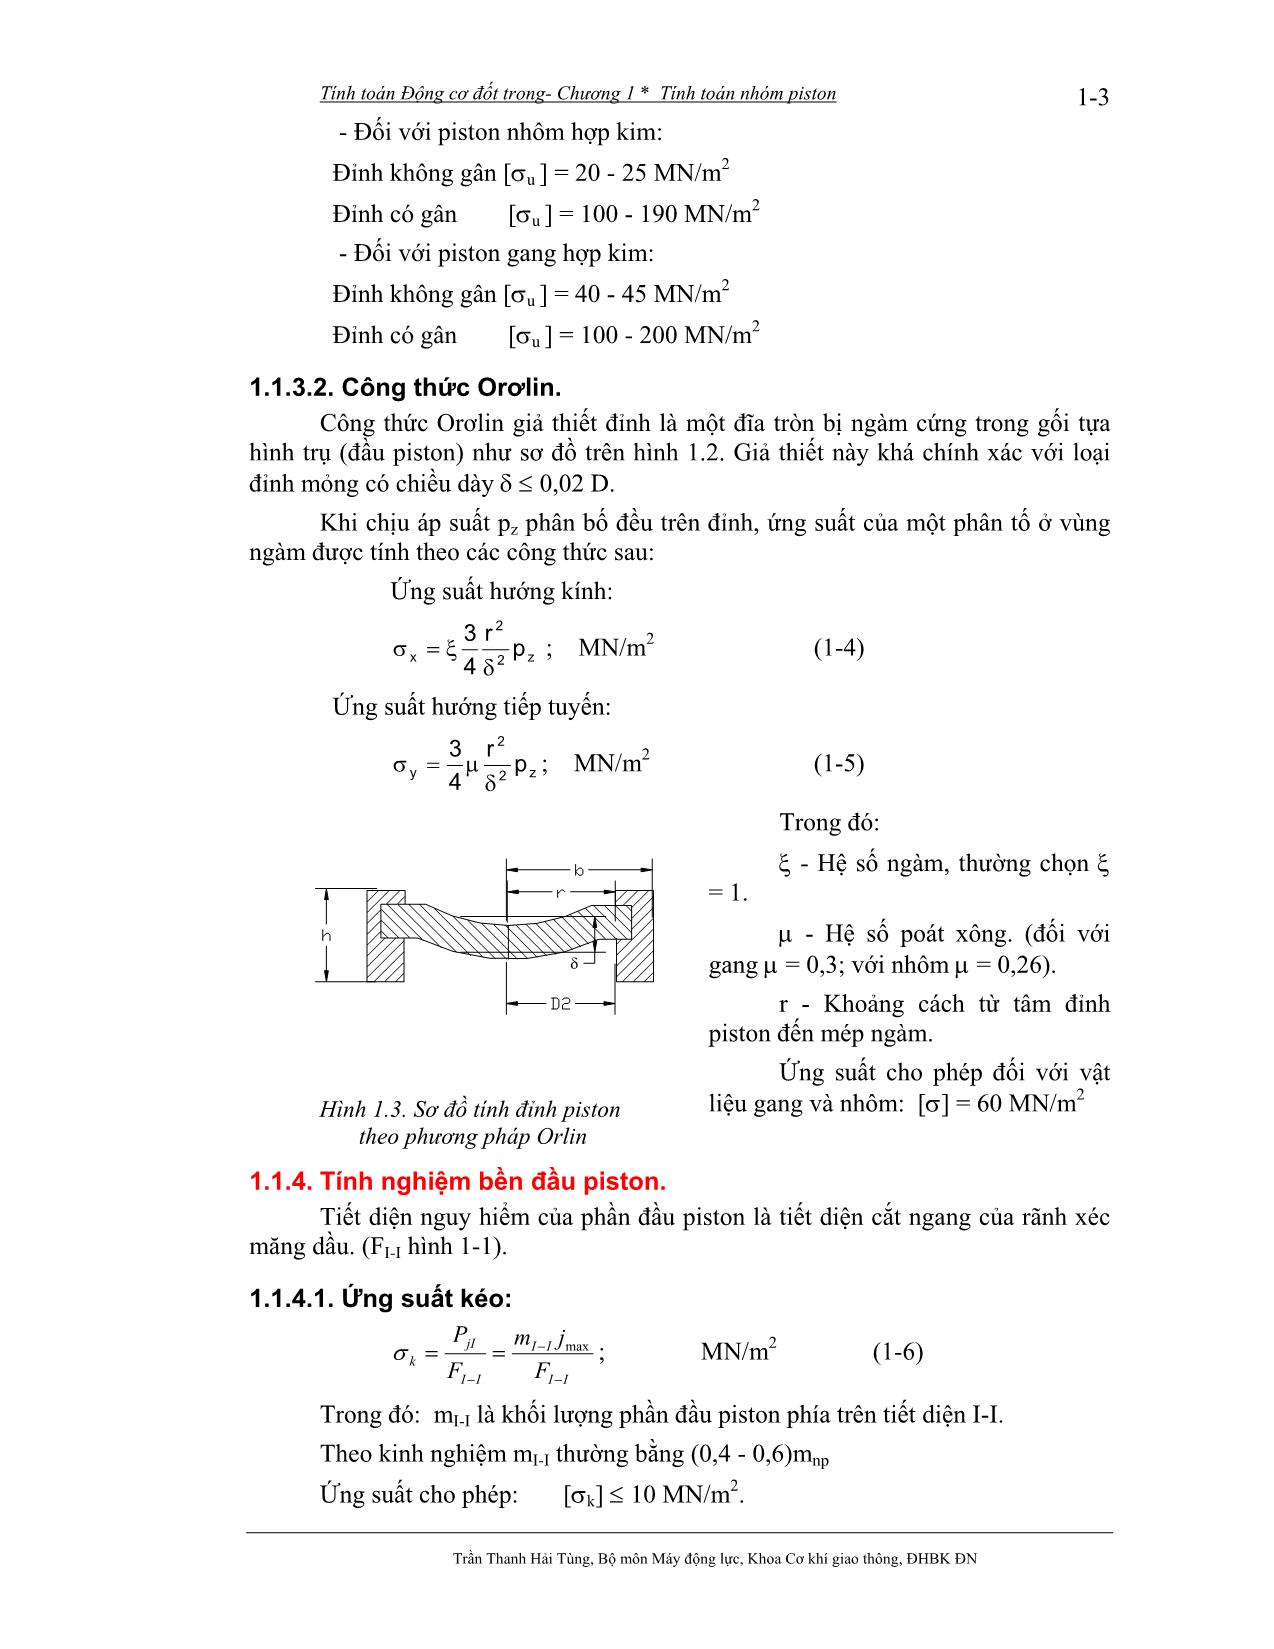 Bài giảng Tính toán thiết kế động cơ đốt trong - Trần Thanh Hải Tùng trang 4